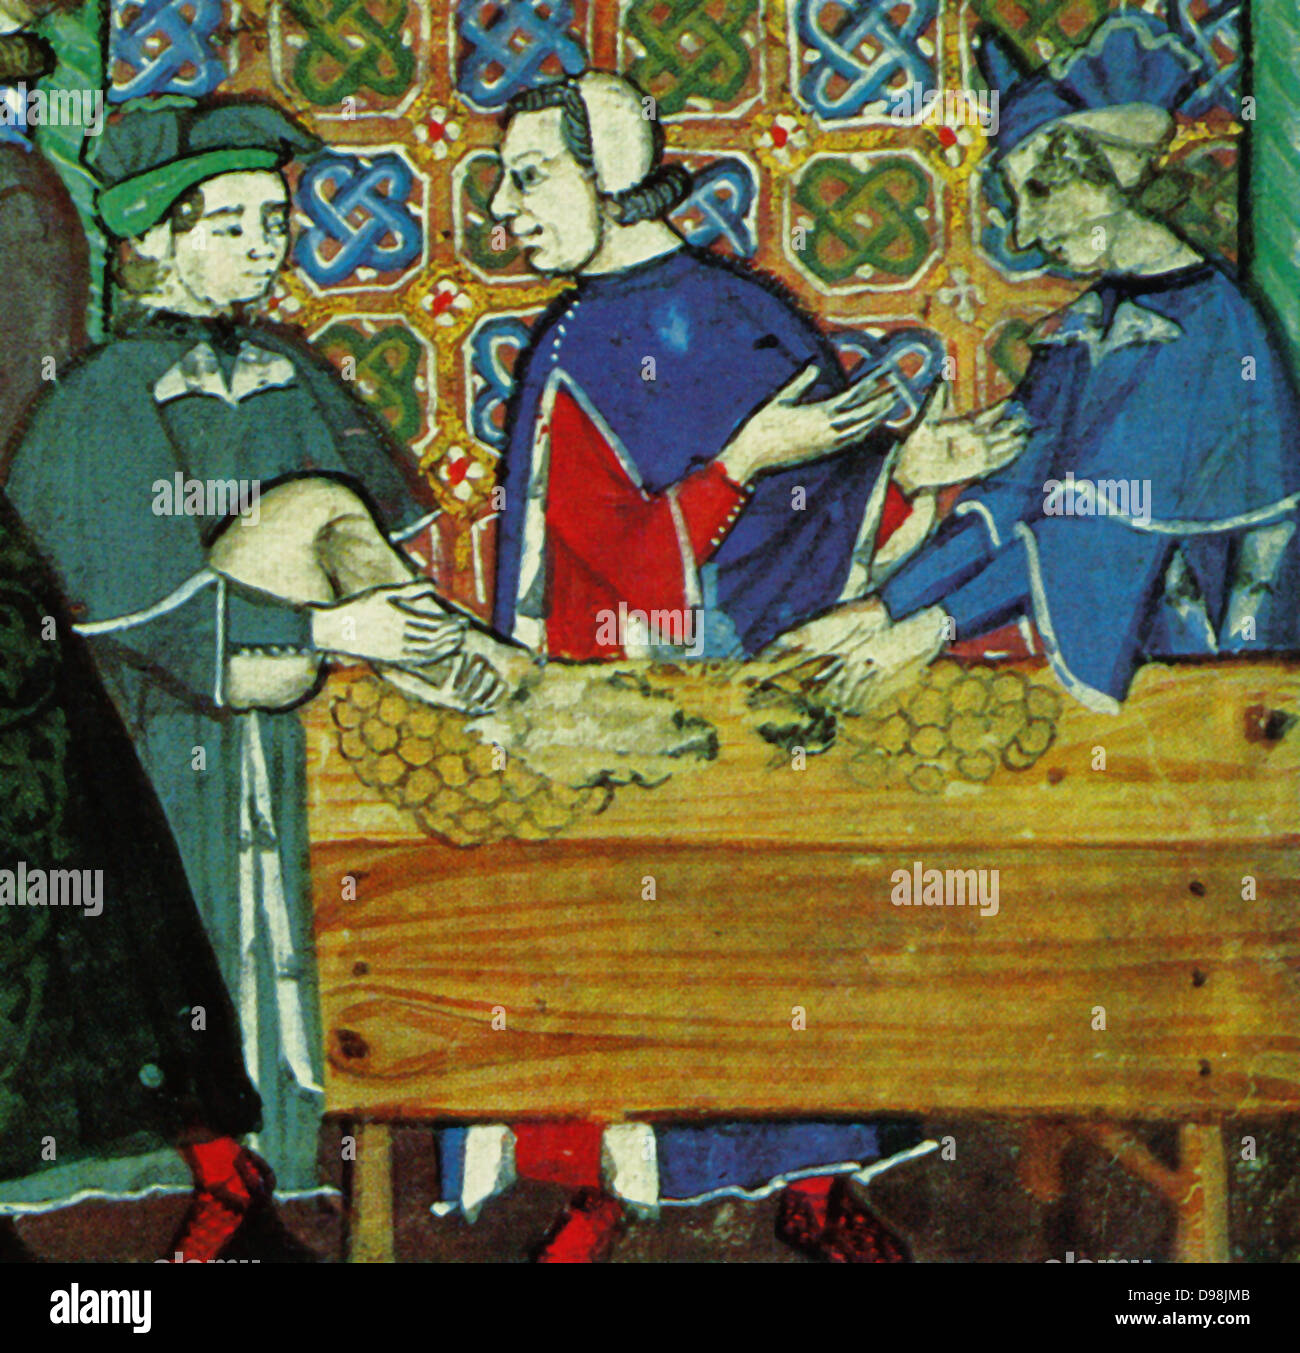 Banking nel borgo medievale di Genova, Italia, raffigurato nel xv secolo, Italiano manoscritto. Scena mostra i banchieri in una casa di conteggio Foto Stock